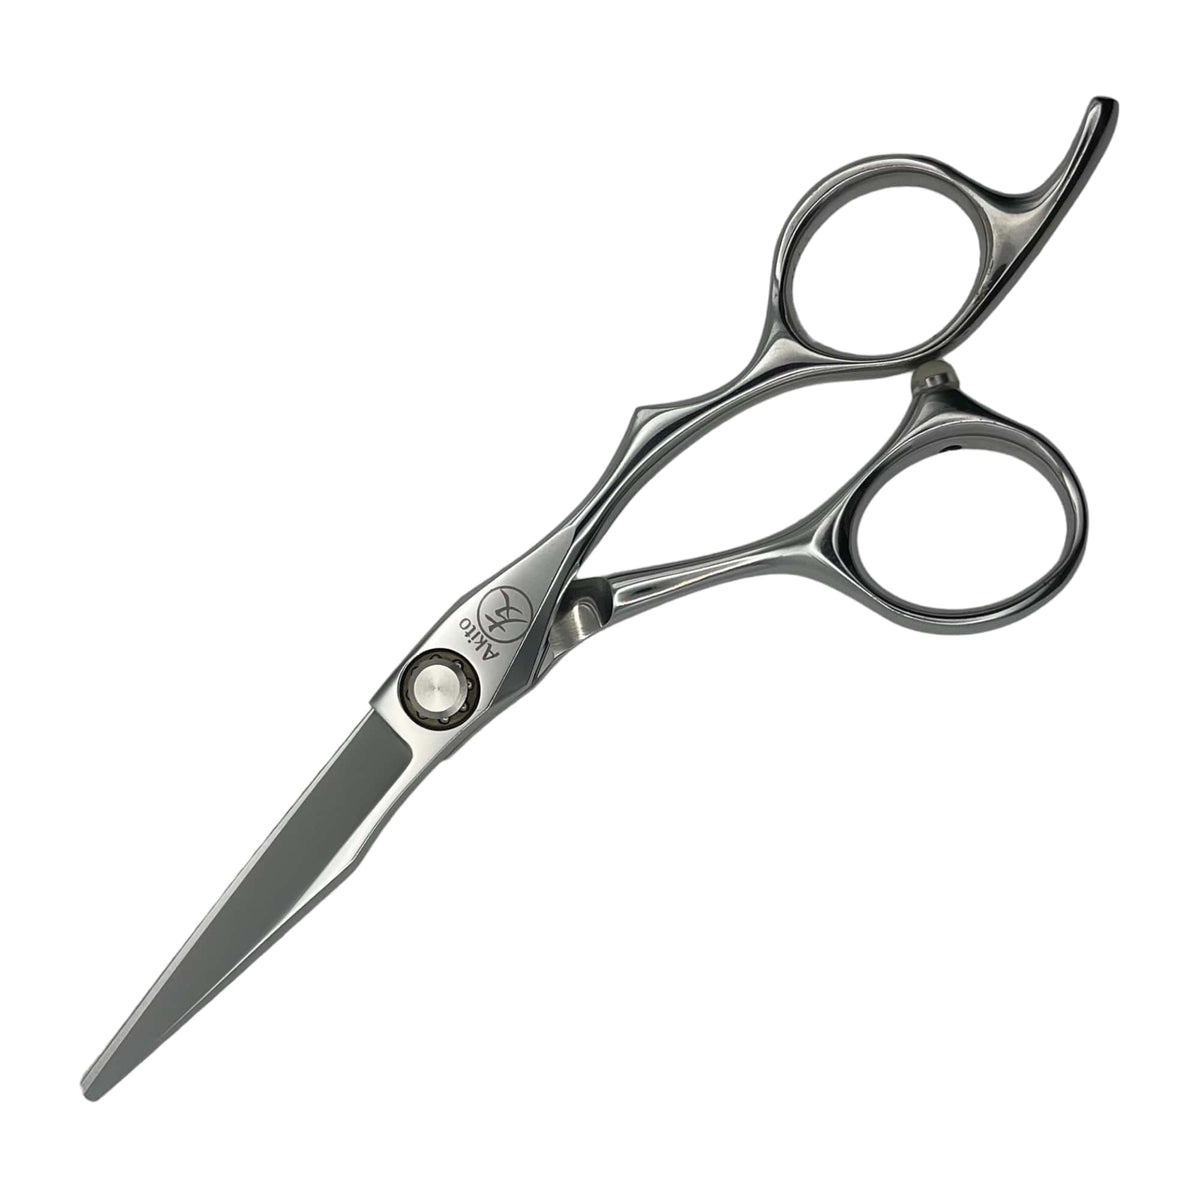 Katana 5.5 hair scissors side angle